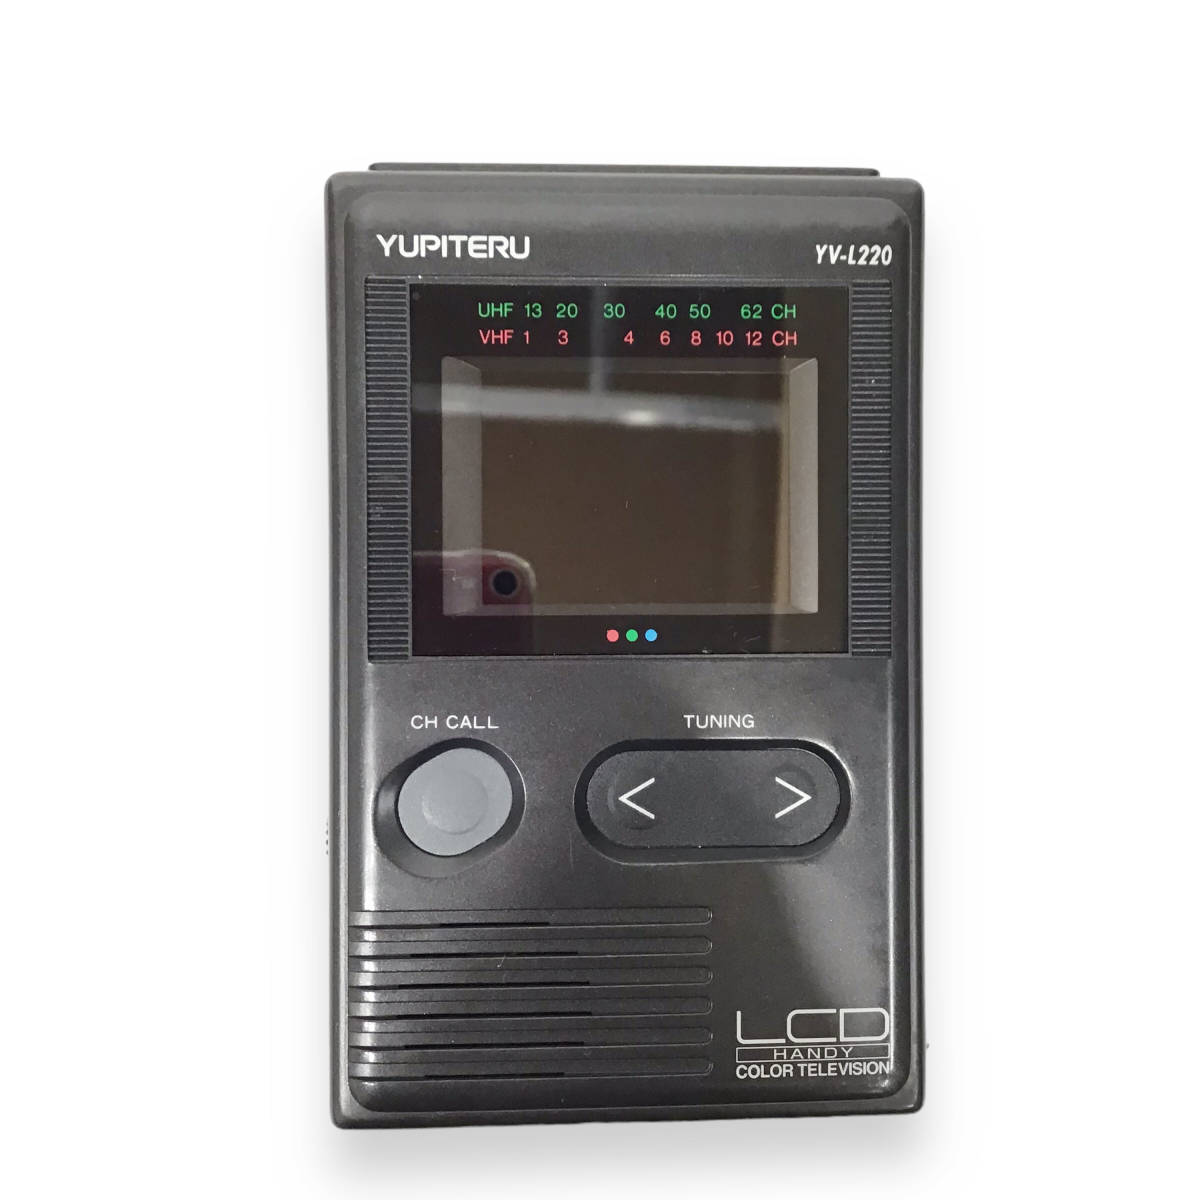 23Y428 1 YUPITERU ユピテル 液晶ハンディカラーテレビ YV-L220 1994年製 アナログ 中古_画像1